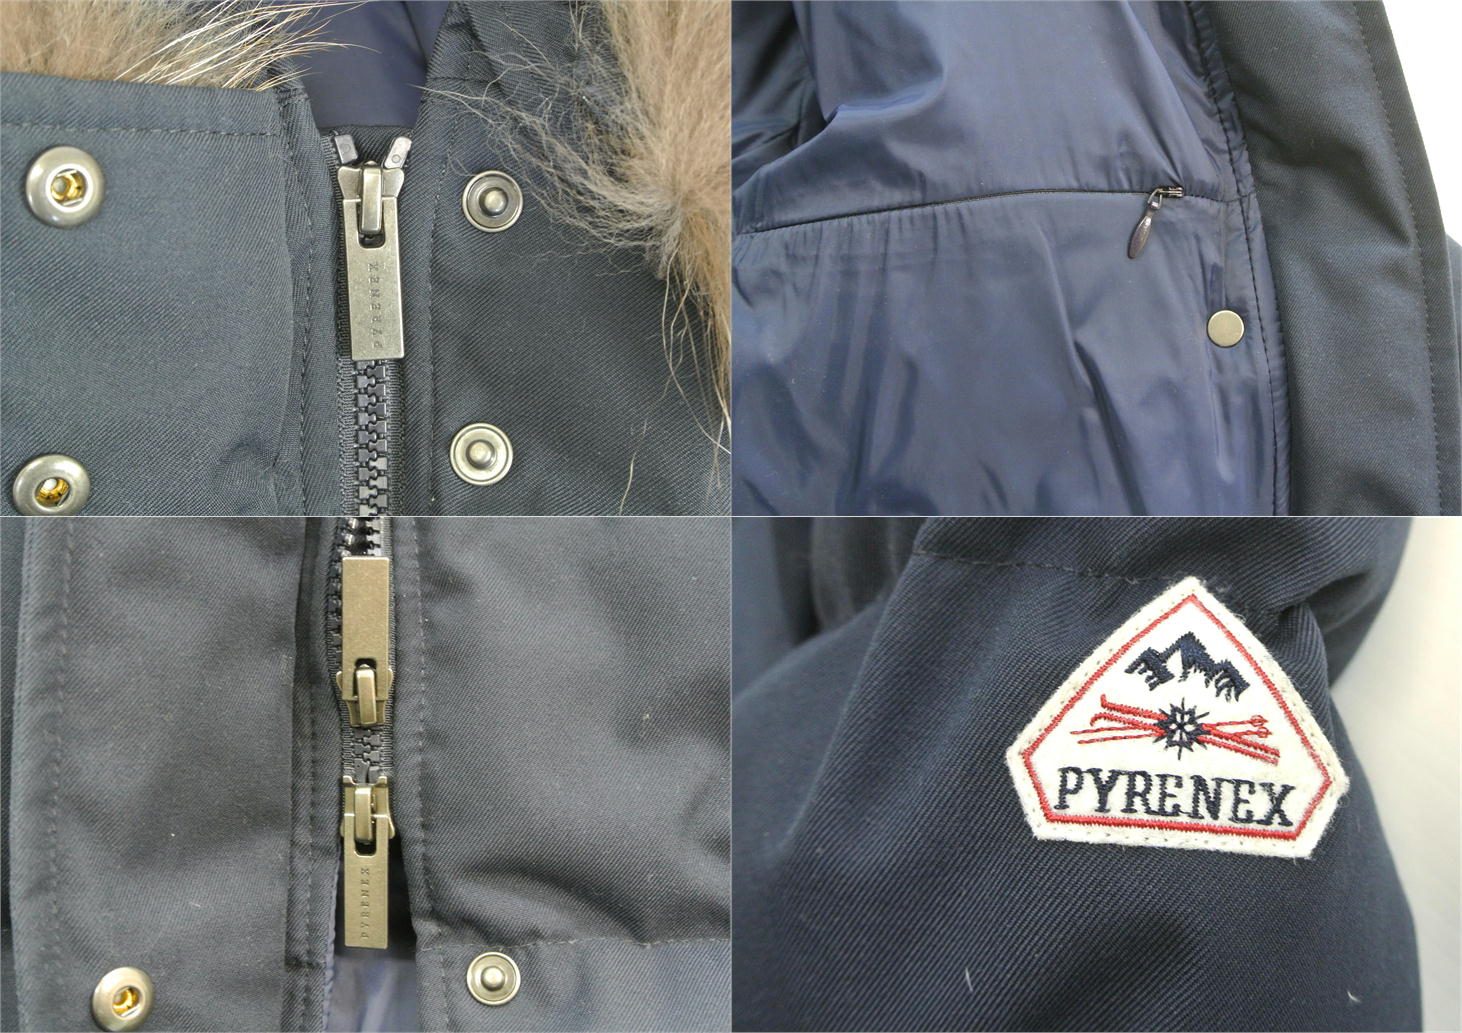 PYRENEX ピレネックス/Grenoble Jacket グルノーブルジャケット ダウン/ABランク/51